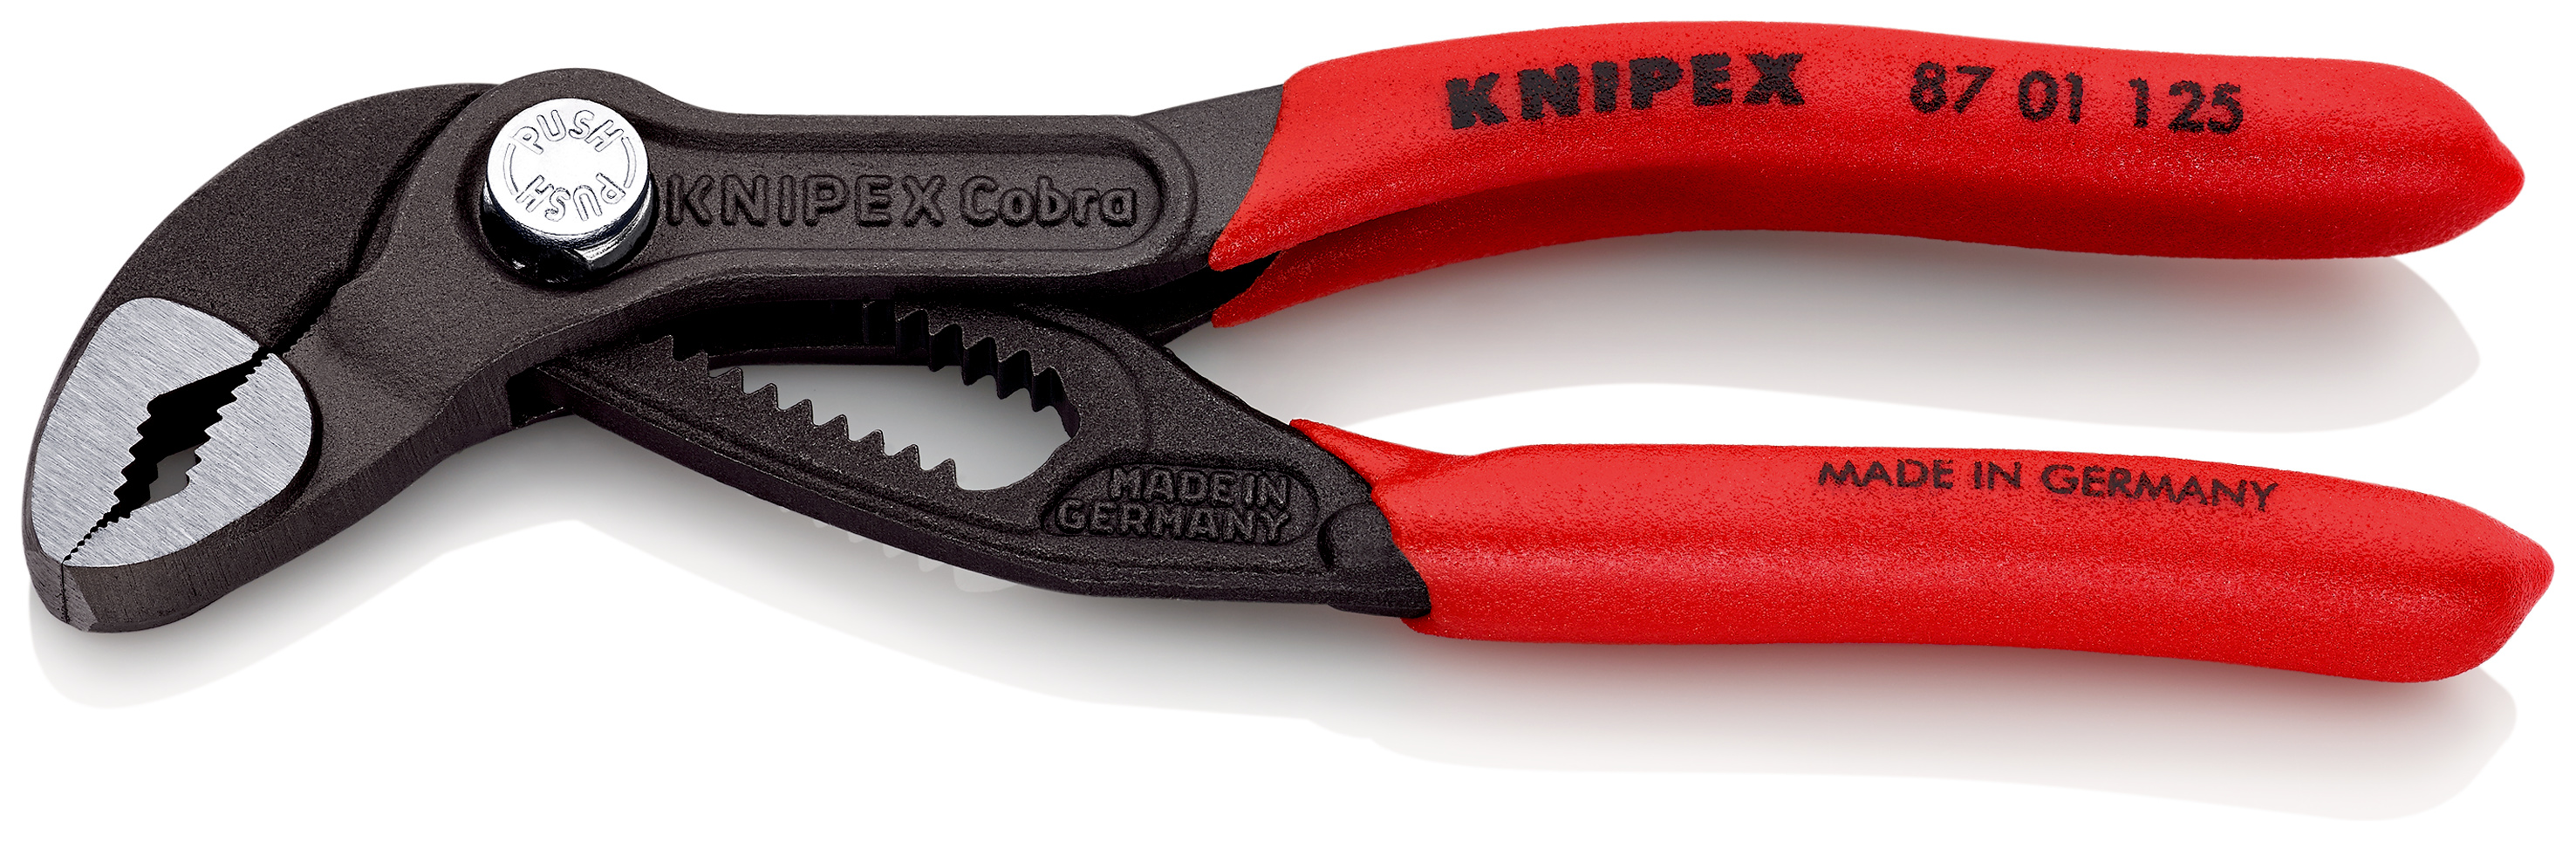 KNIPEX Cobra® ハイテク・ウォーターポンププライヤー | Knipex